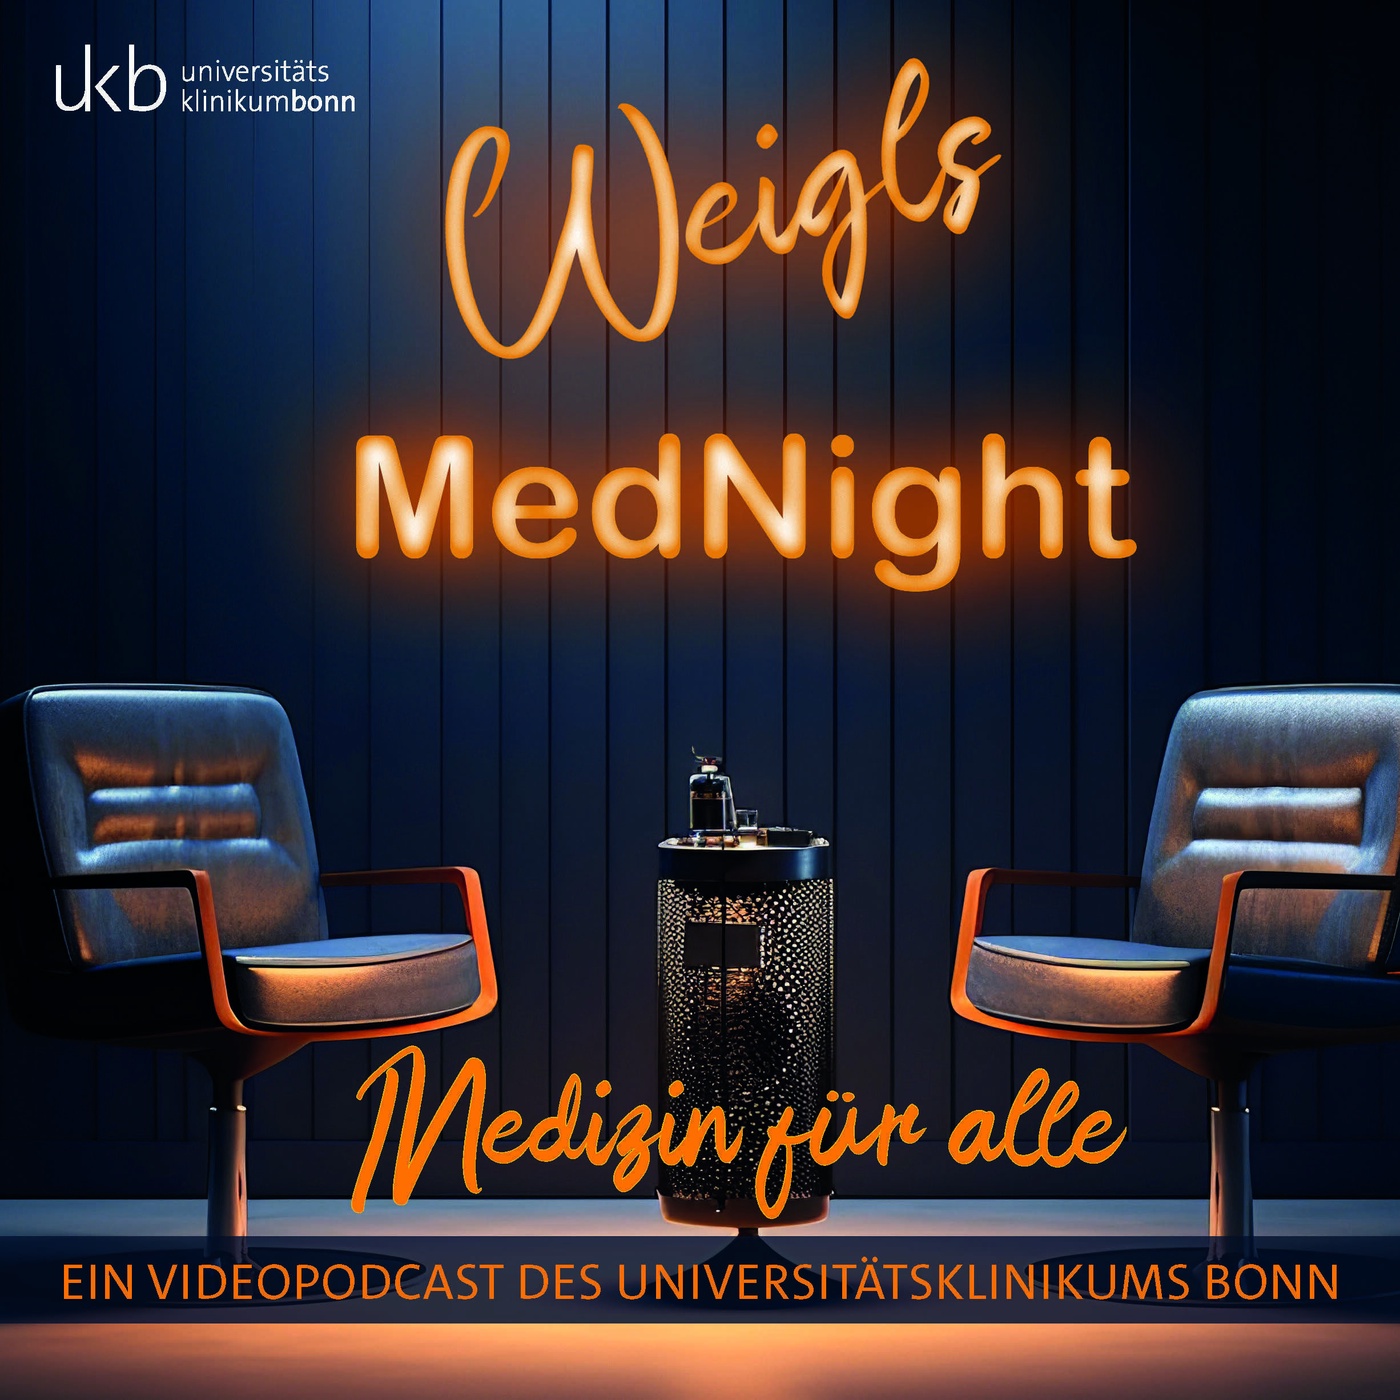 Weigl’s MedNight